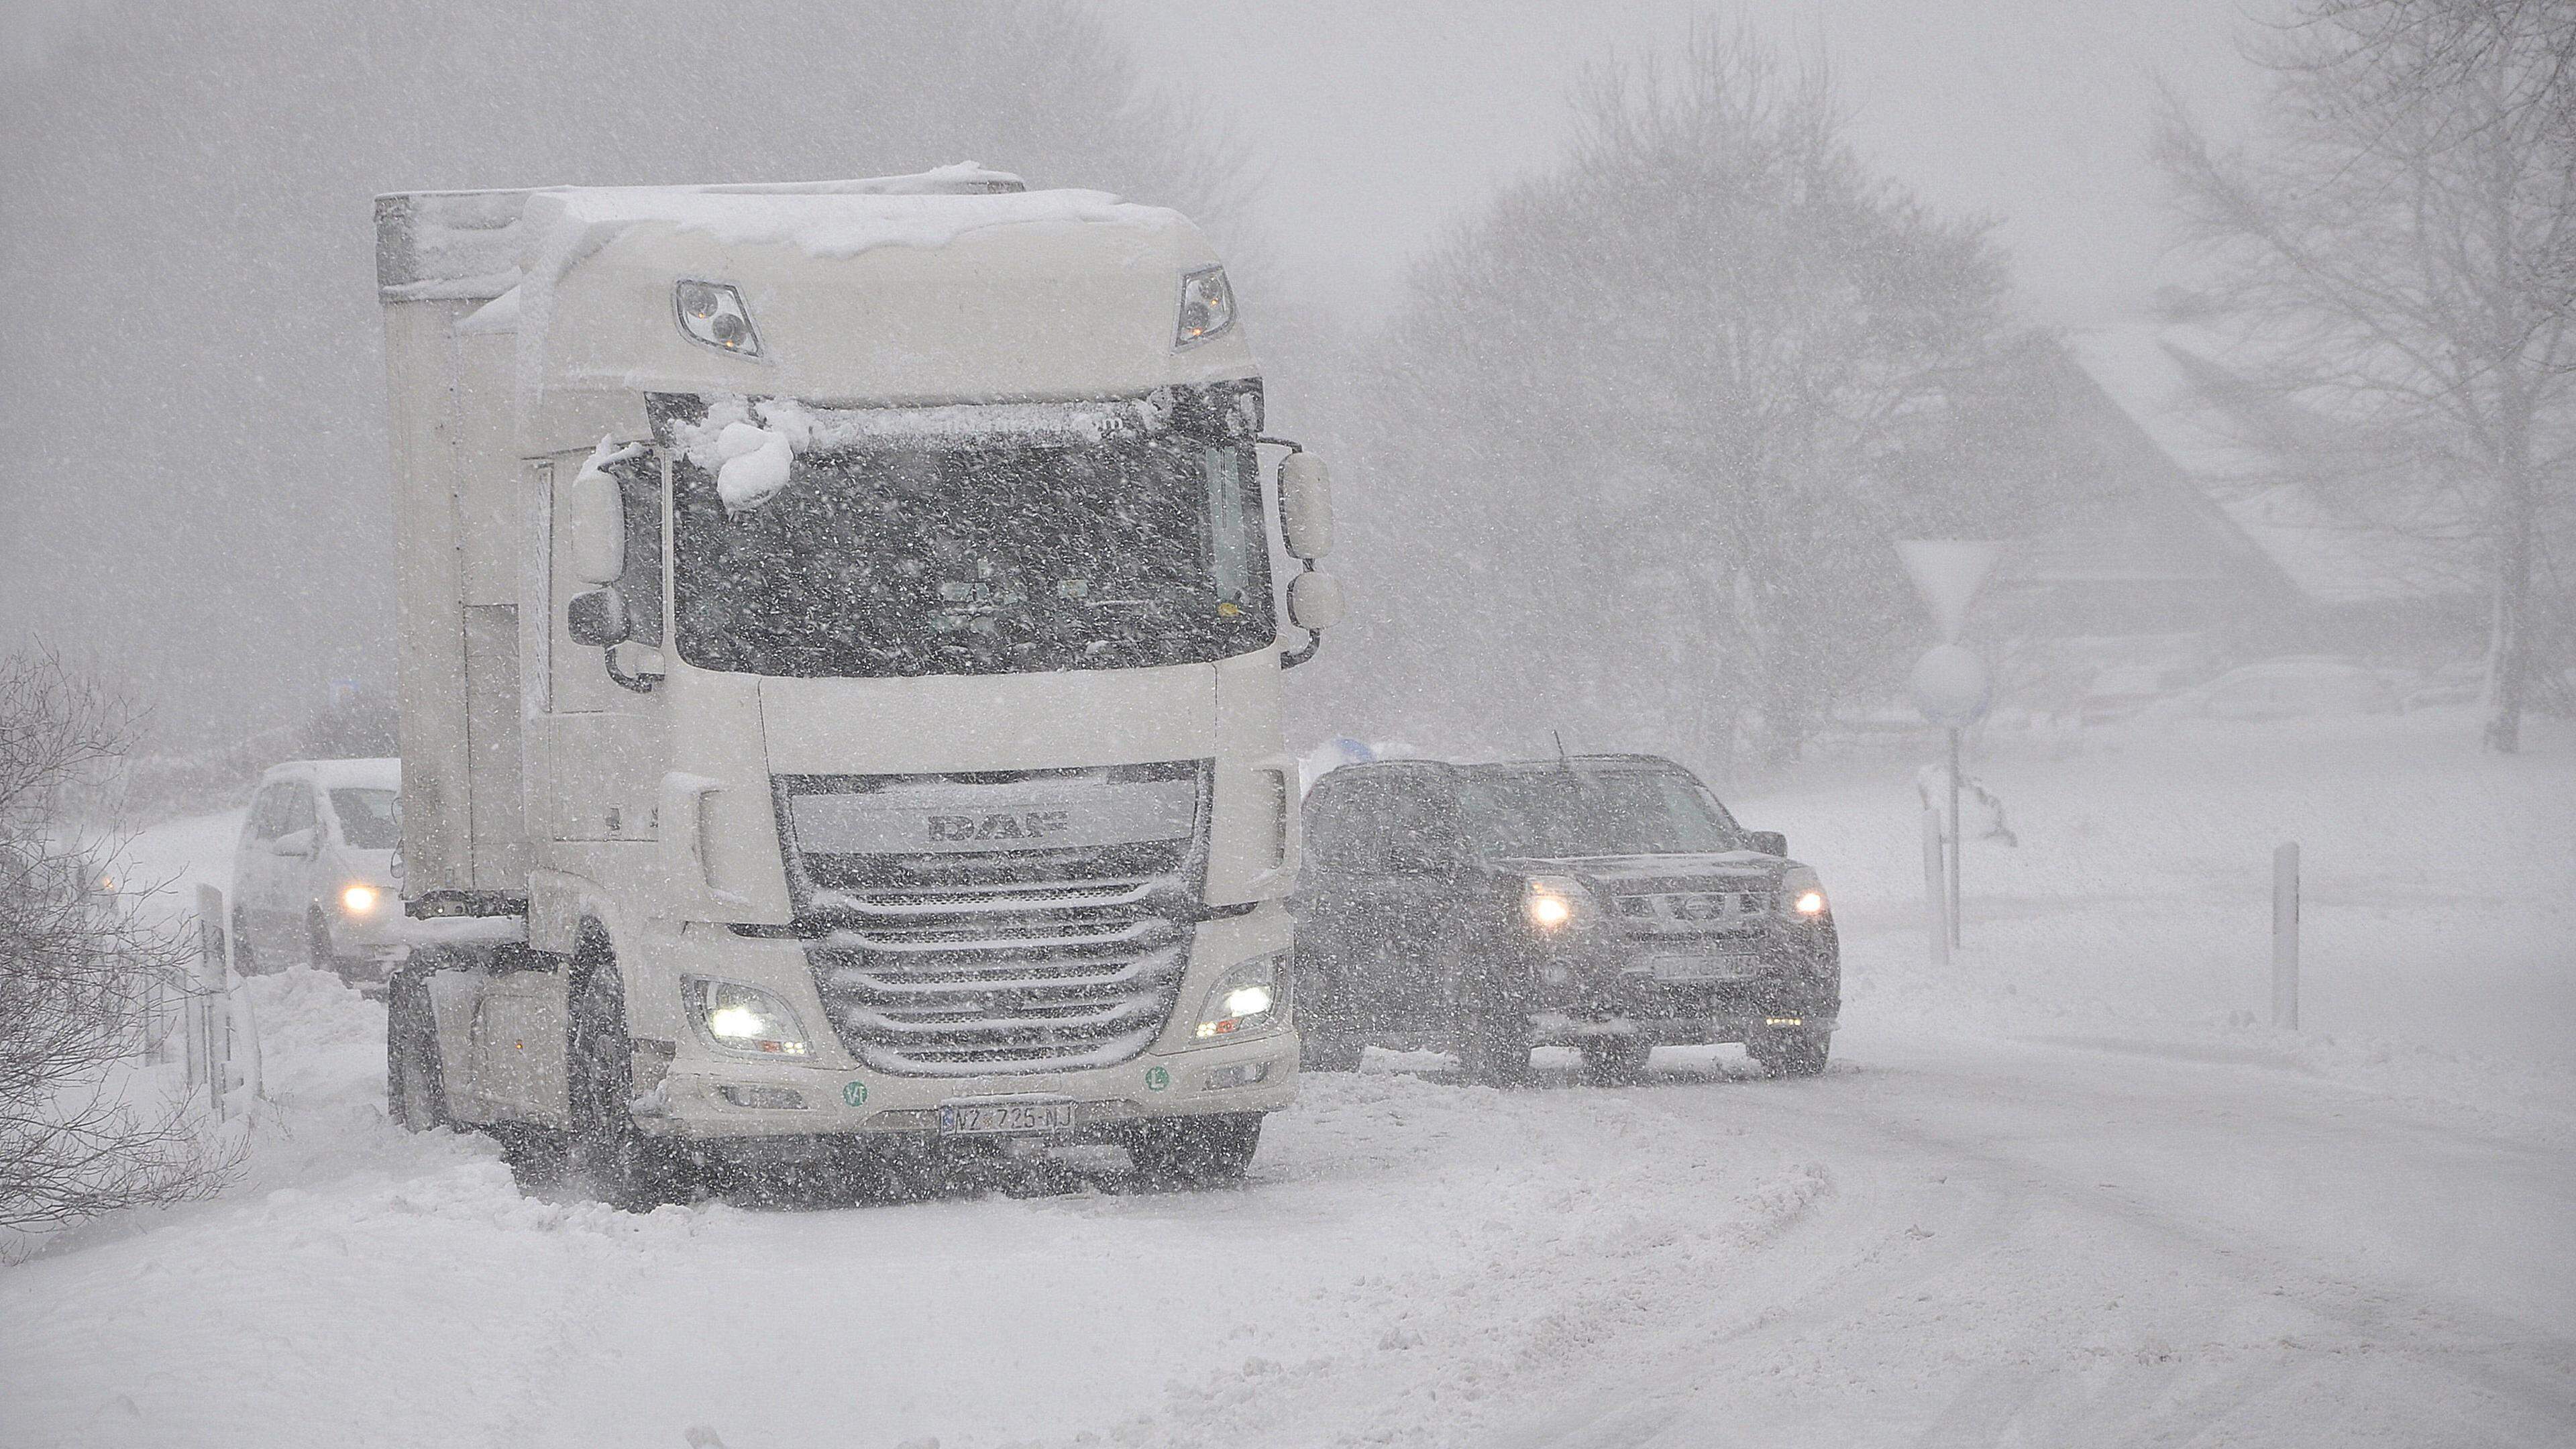 Schnee und glatte Straßen sorgen für zahlreiche Unfälle